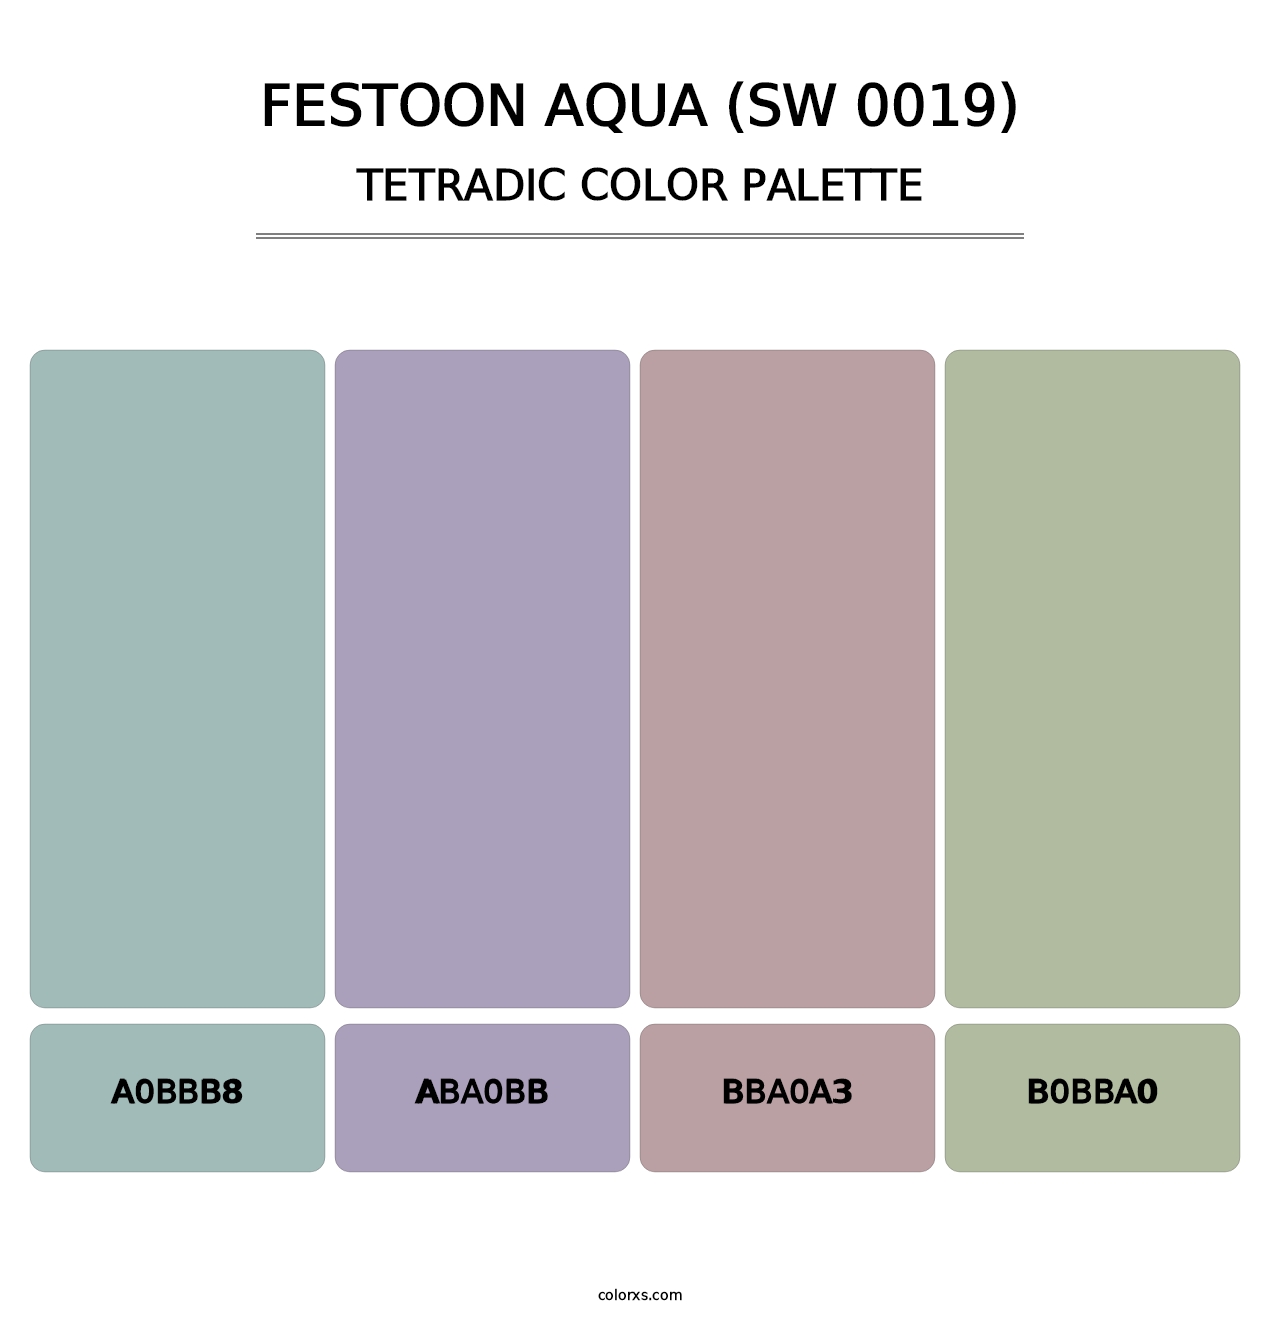 Festoon Aqua (SW 0019) - Tetradic Color Palette